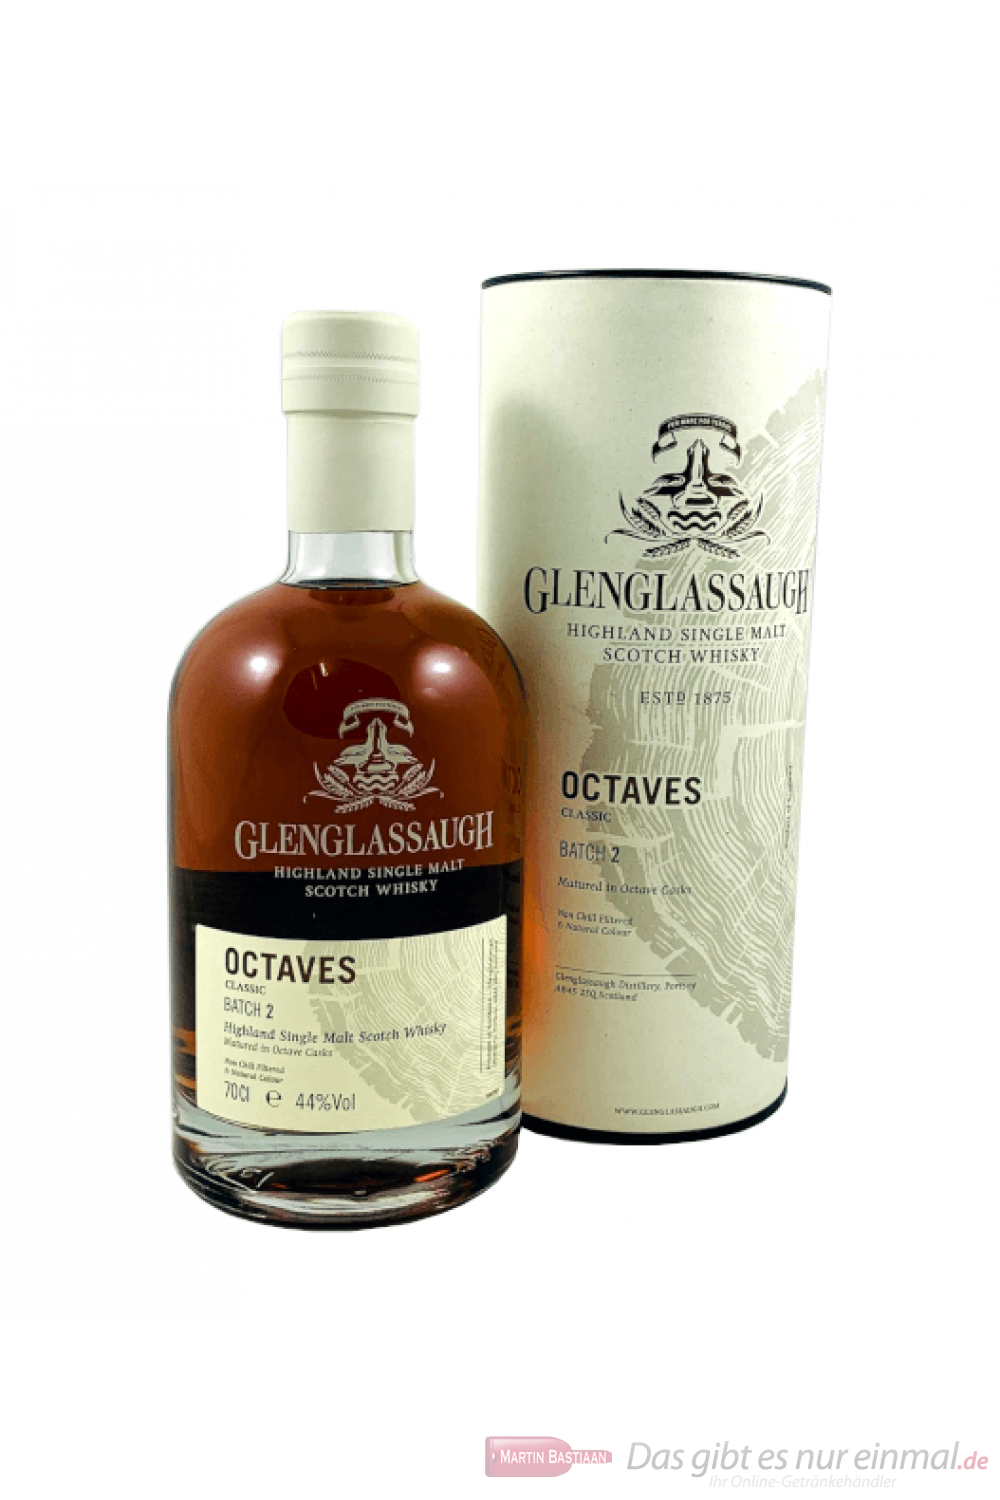 Glenglassaugh Octaves Classic Batch 2 Single Malt Scotch Whisky 0,7l